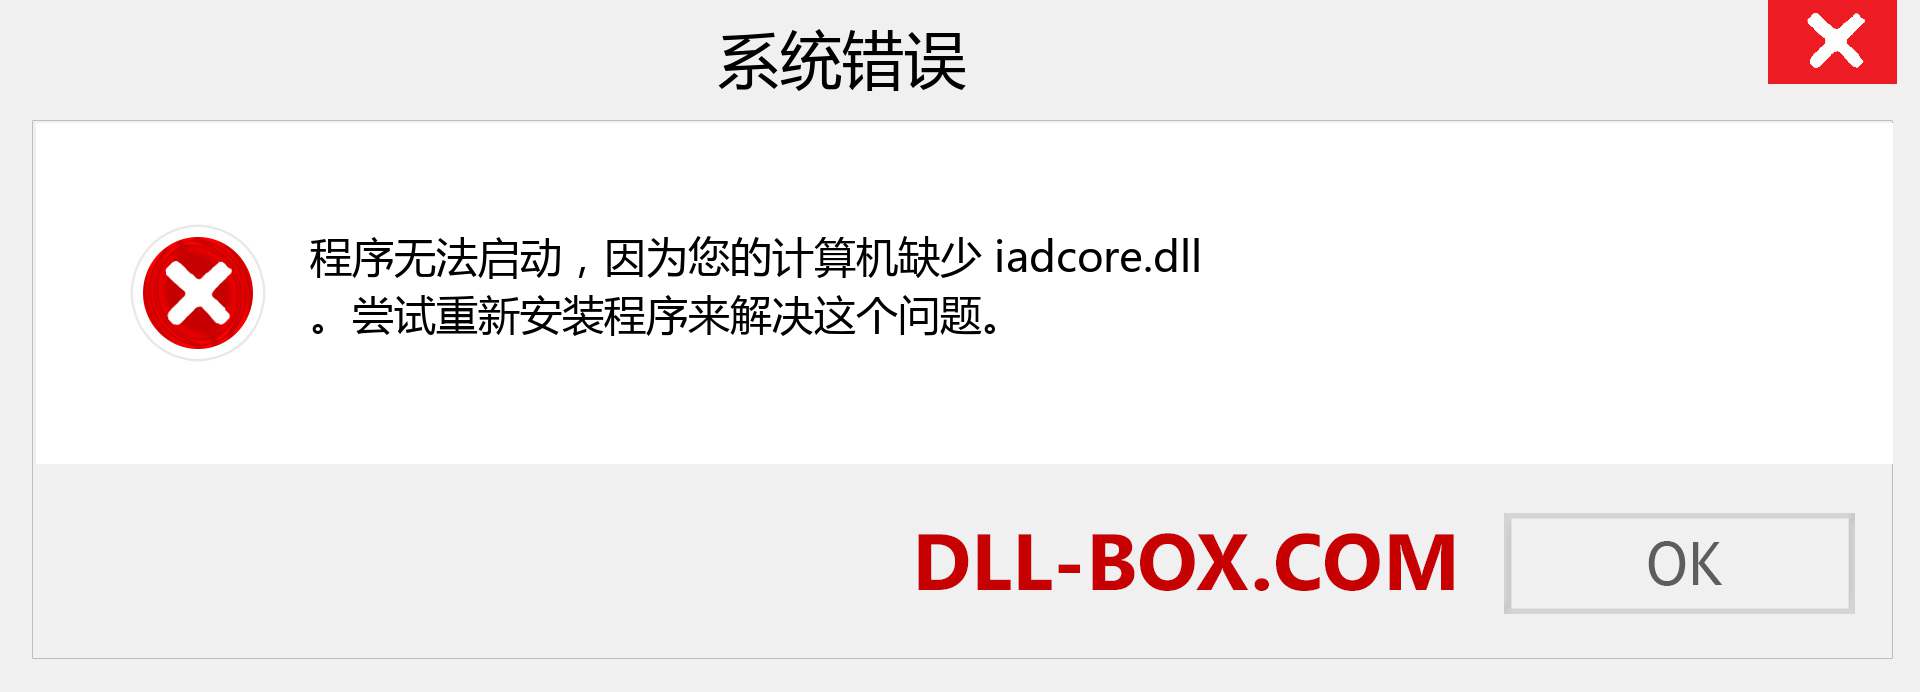 iadcore.dll 文件丢失？。 适用于 Windows 7、8、10 的下载 - 修复 Windows、照片、图像上的 iadcore dll 丢失错误